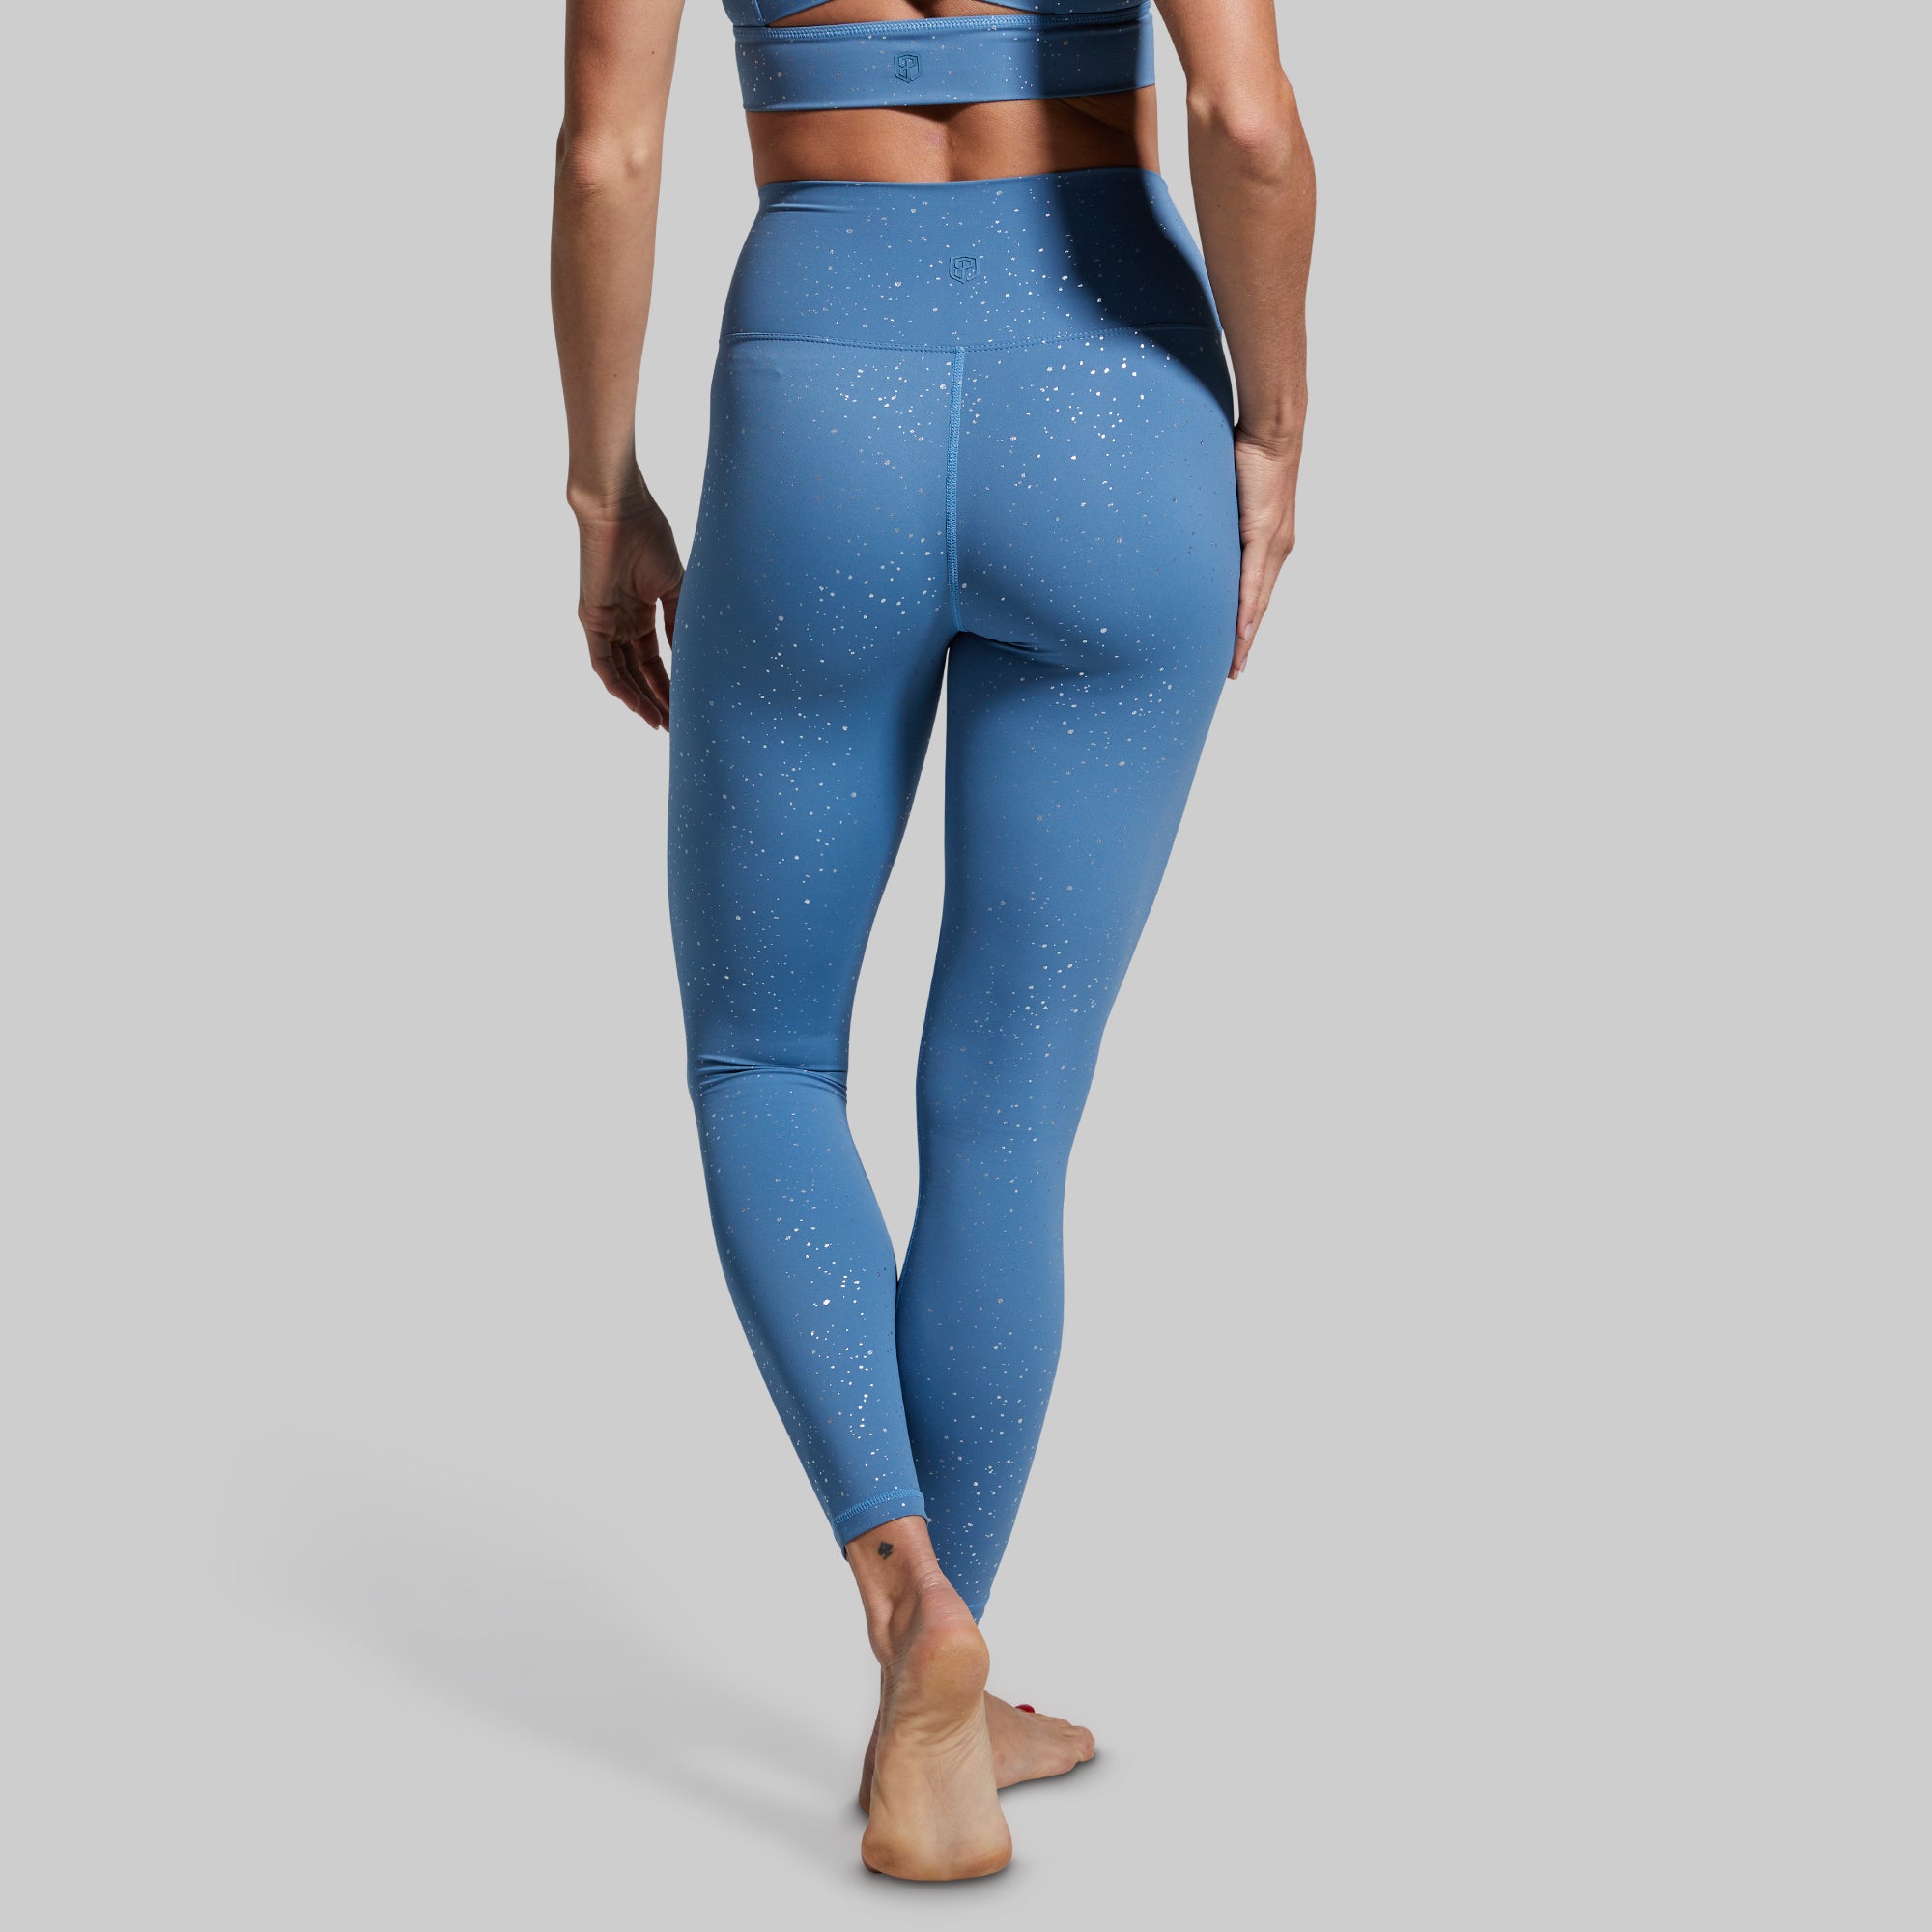 beyond yoga blue leggings